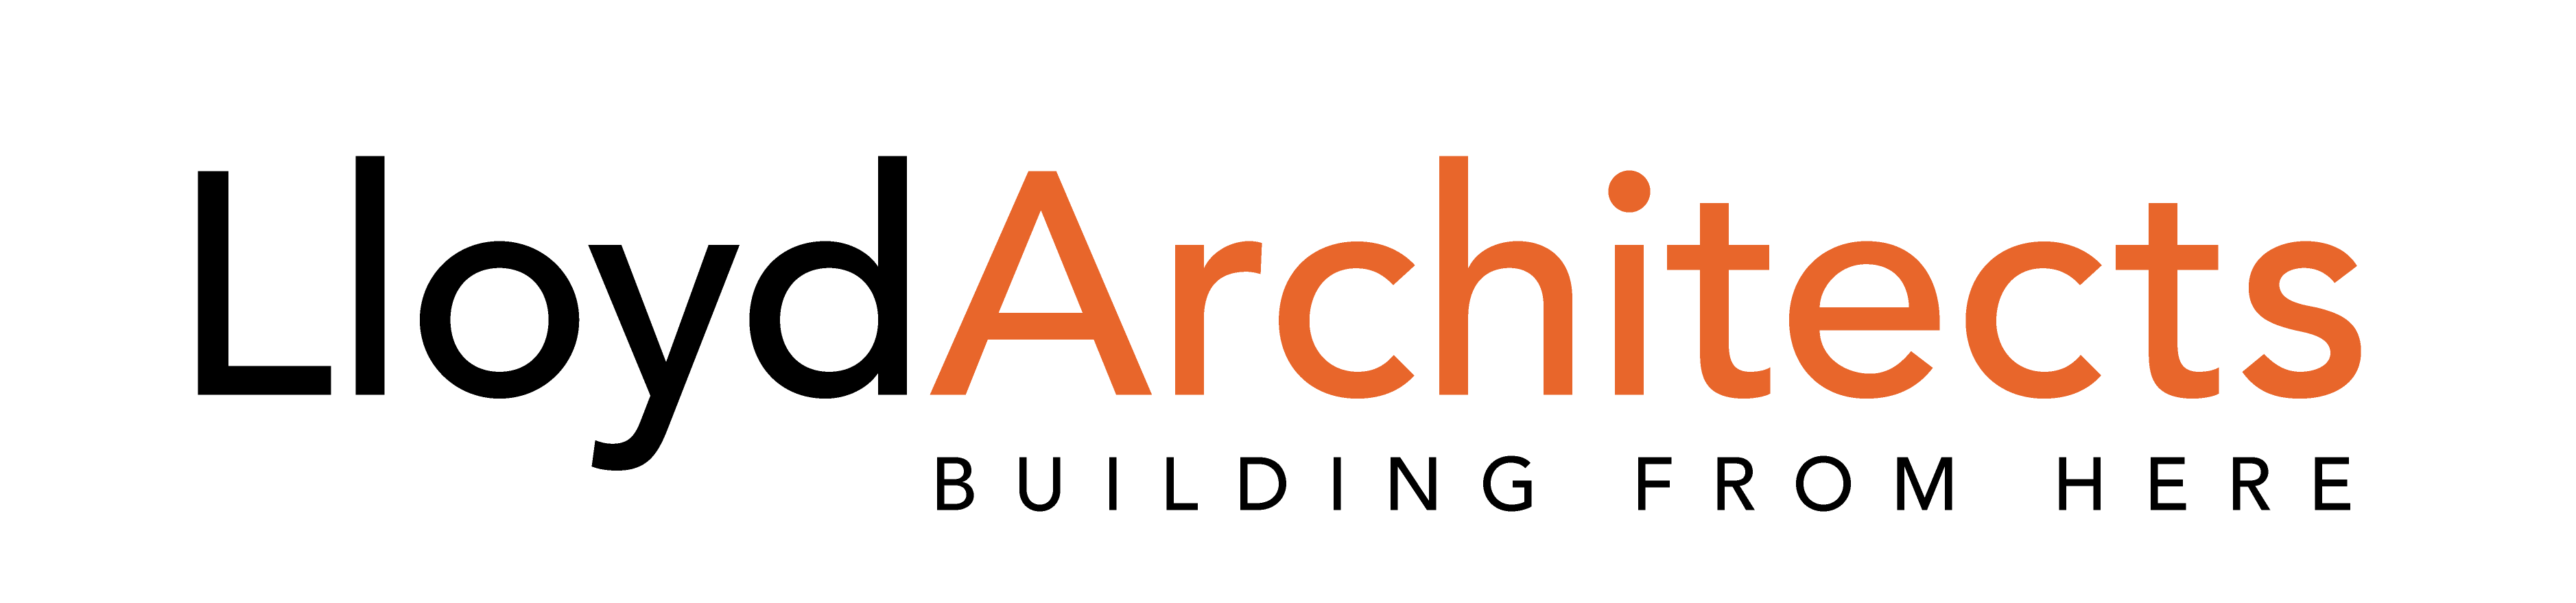 LloydArchitects Primary logo